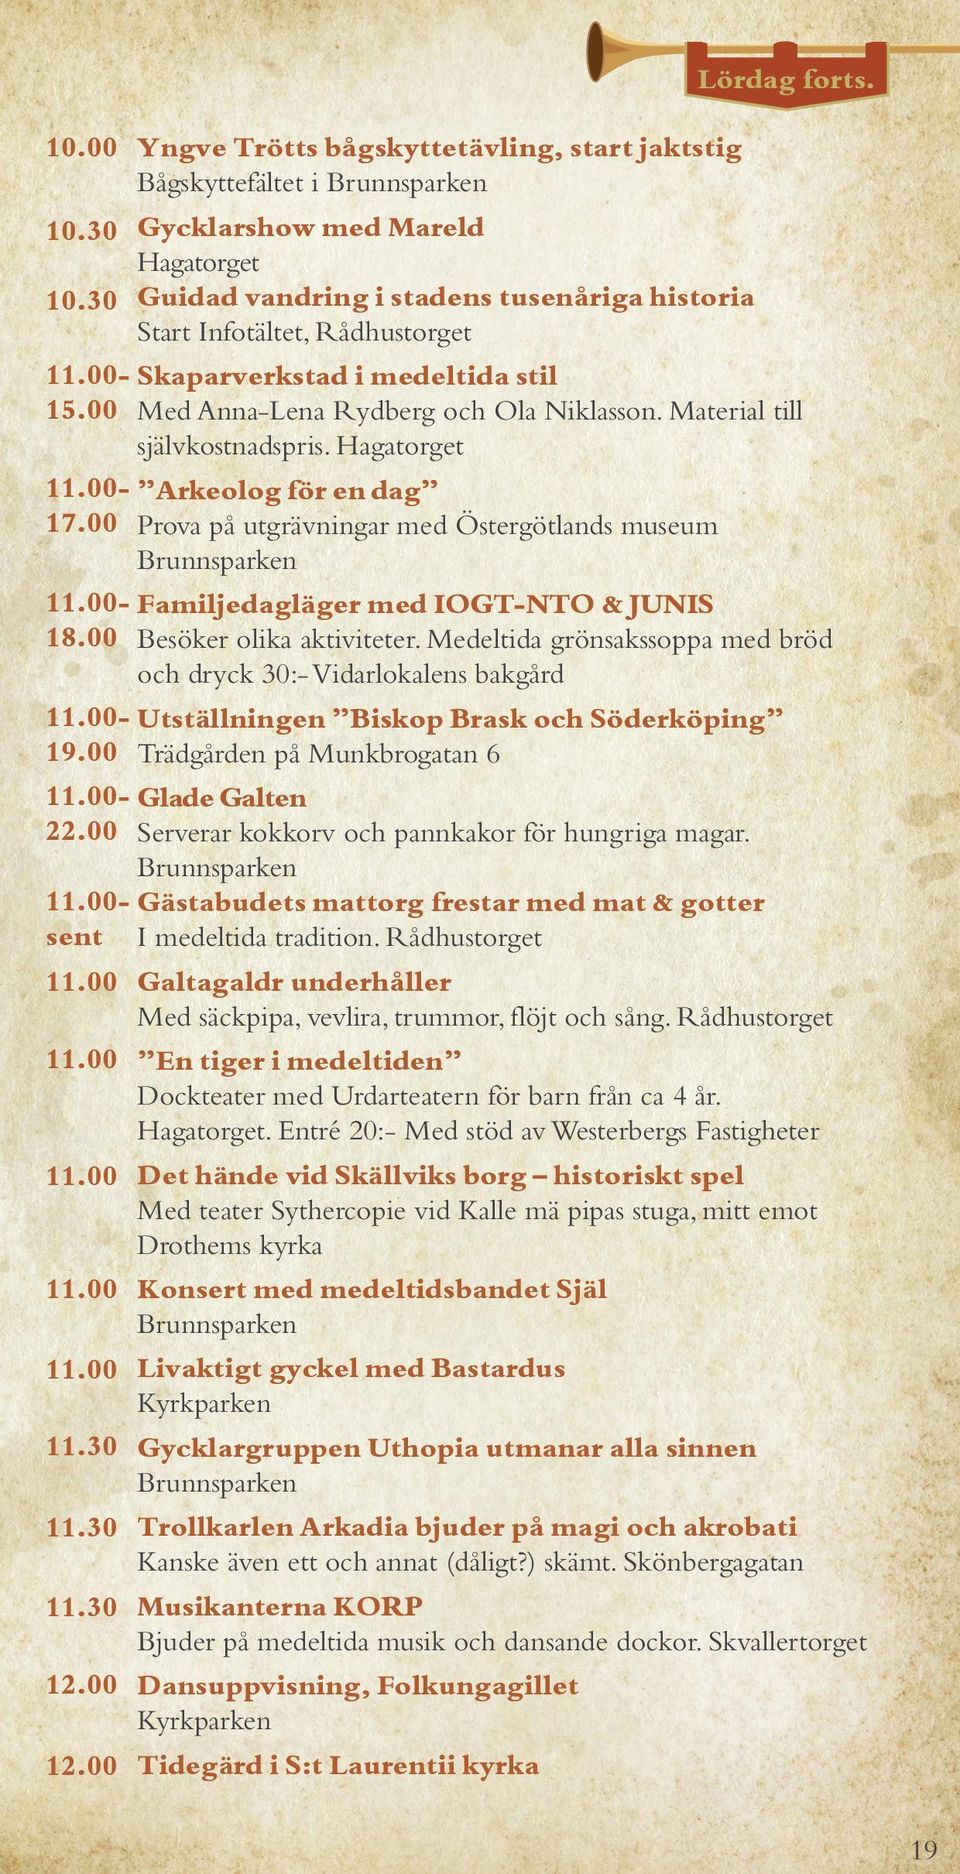 Hagatorget Arkeolog för en dag 17.00 Prova på utgrävningar med Östergötlands museum Familjedagläger med IOGT-NTO & JUNIS 18.00 Besöker olika aktiviteter.